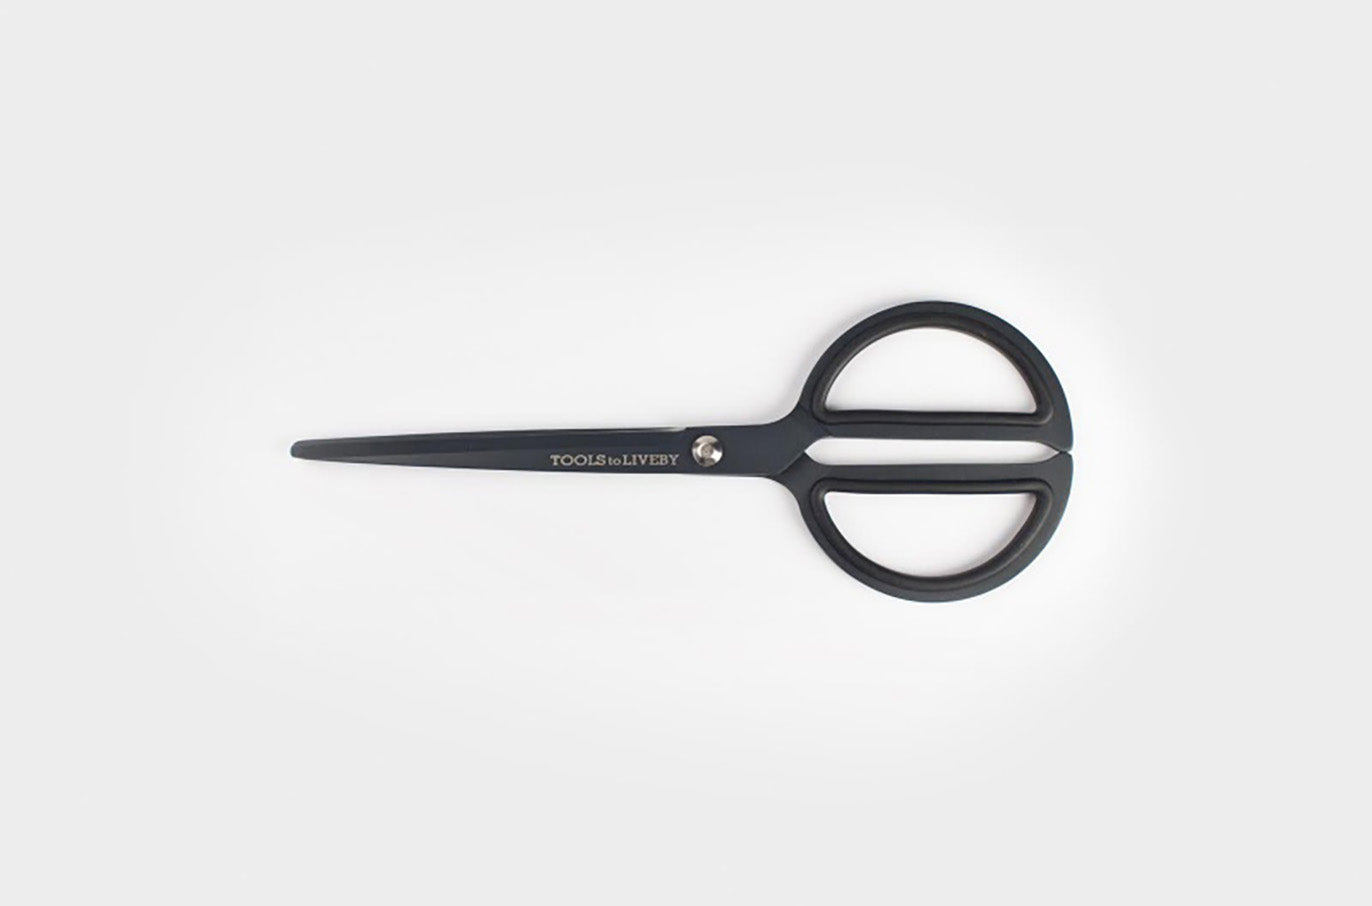 Black 8" Japanese Stainless Steel Scissors